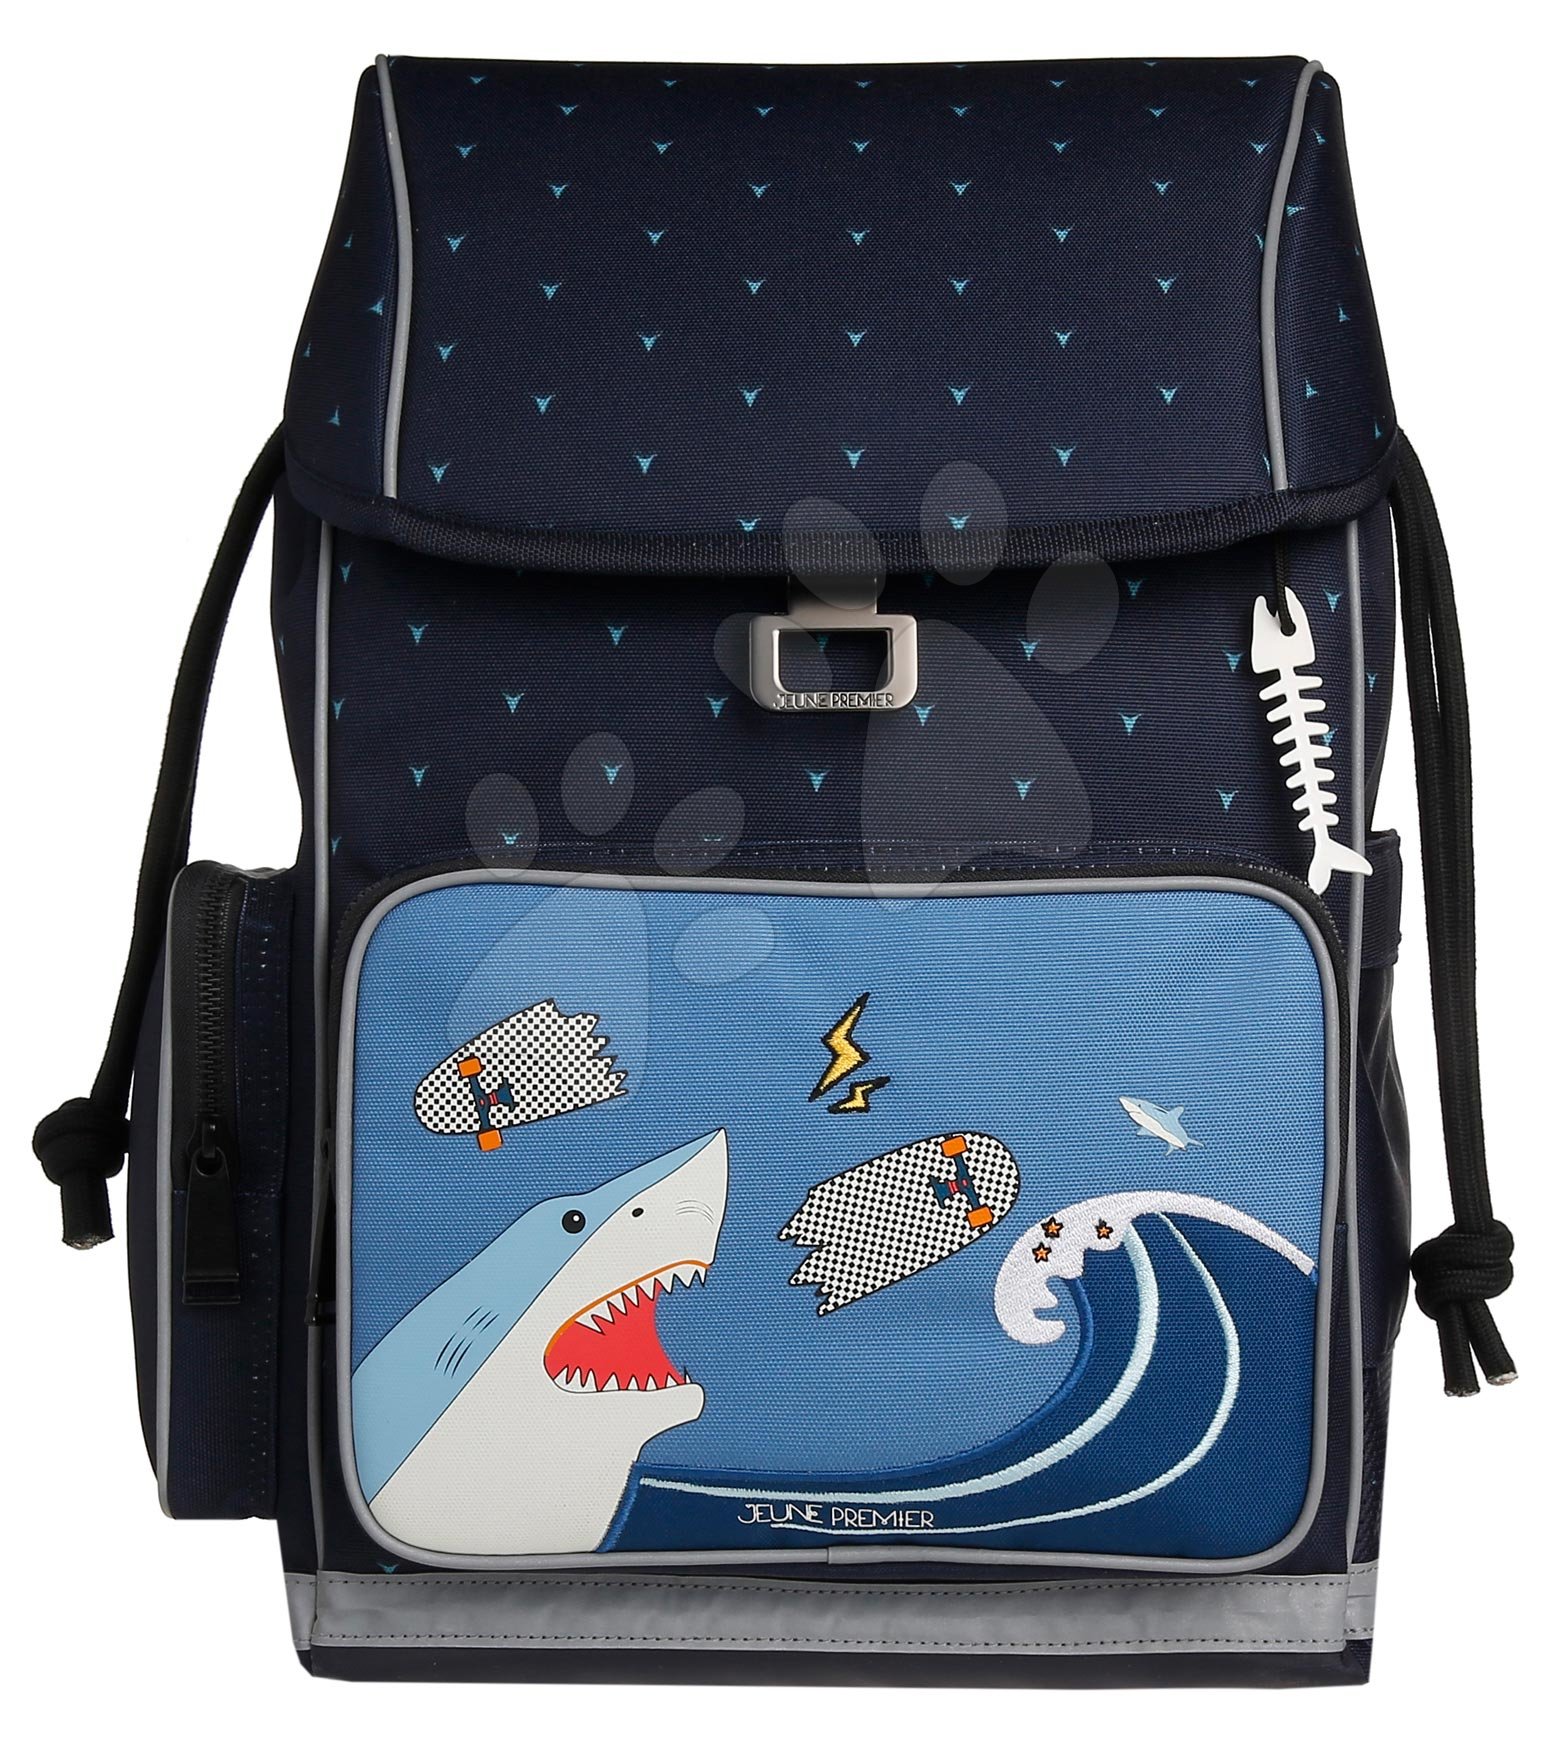 Iskolai nagy hátizsák Ergomaxx Sharkie Jeune Premier ergonomikus luxus kivitel 39*26 cm gyerek játék webáruház - játék rendelés online Kreatív és didaktikus játékok | Iskolai kellékek | Iskolai hátizsákok